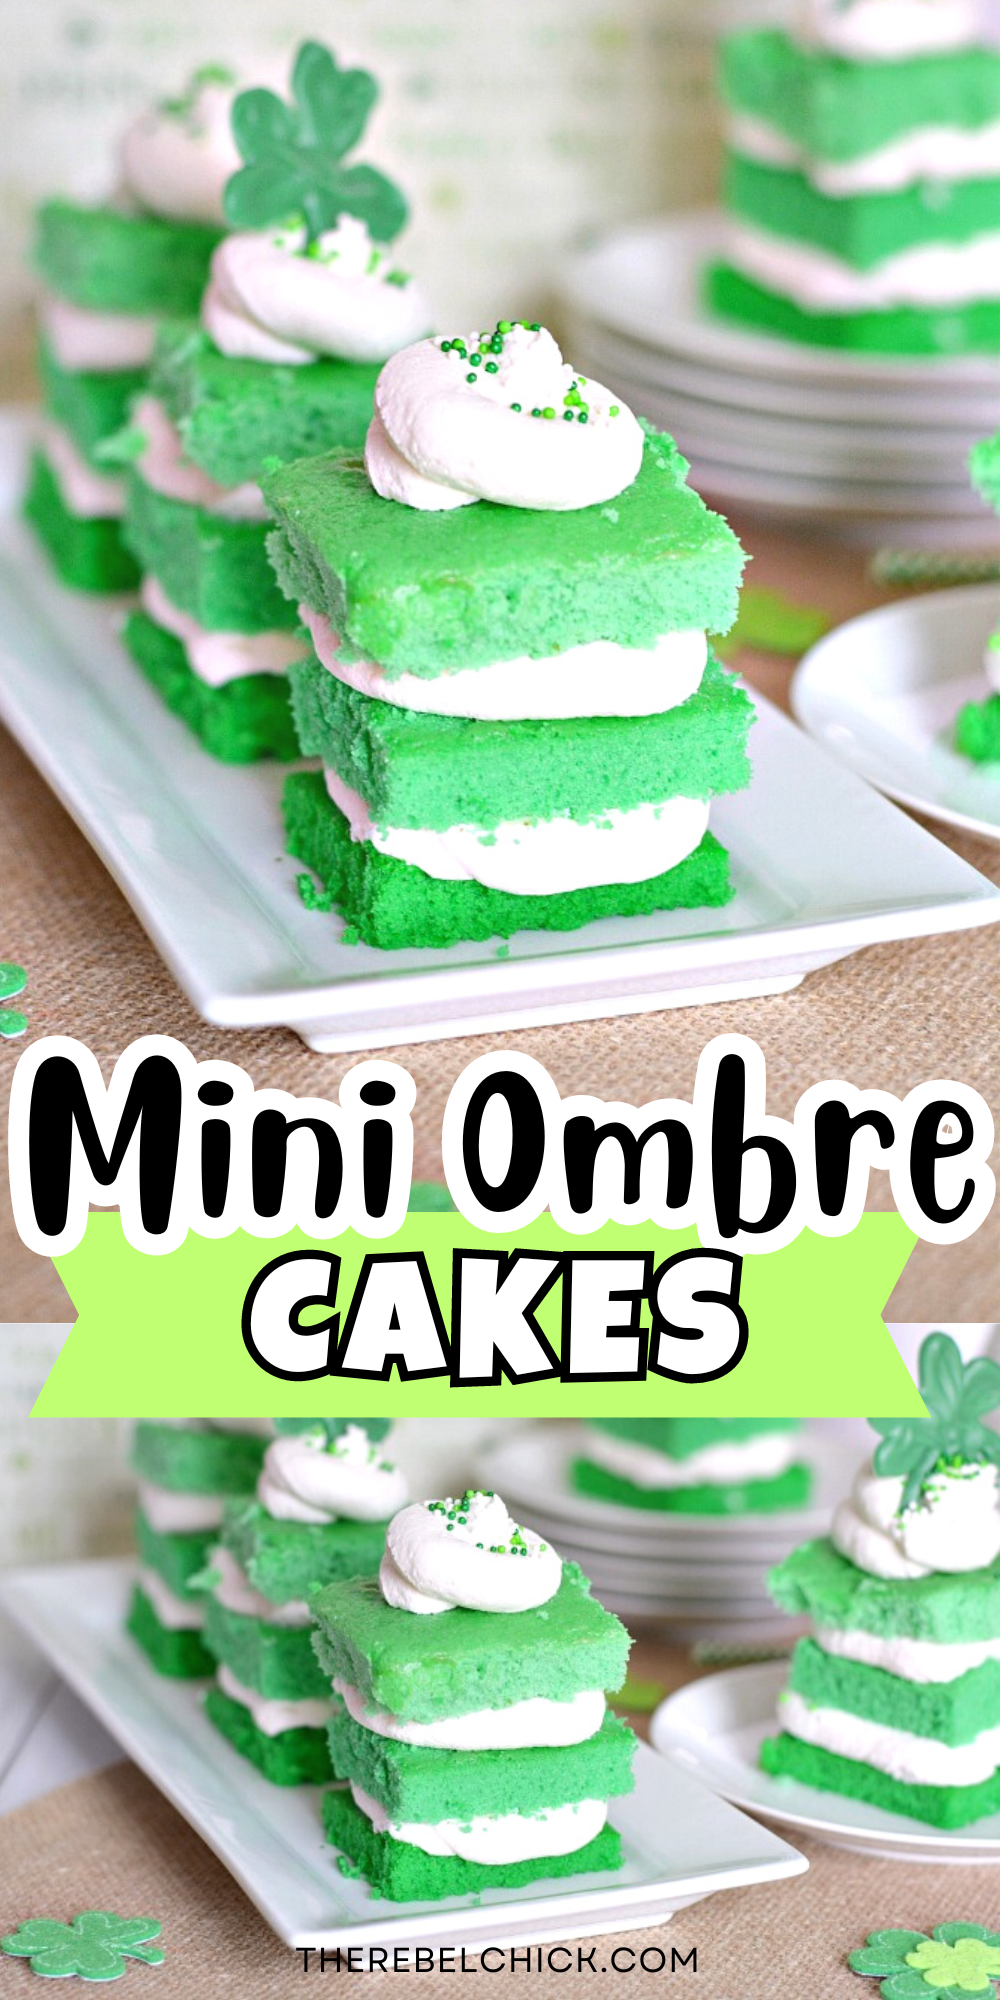 Mini Ombre Cakes